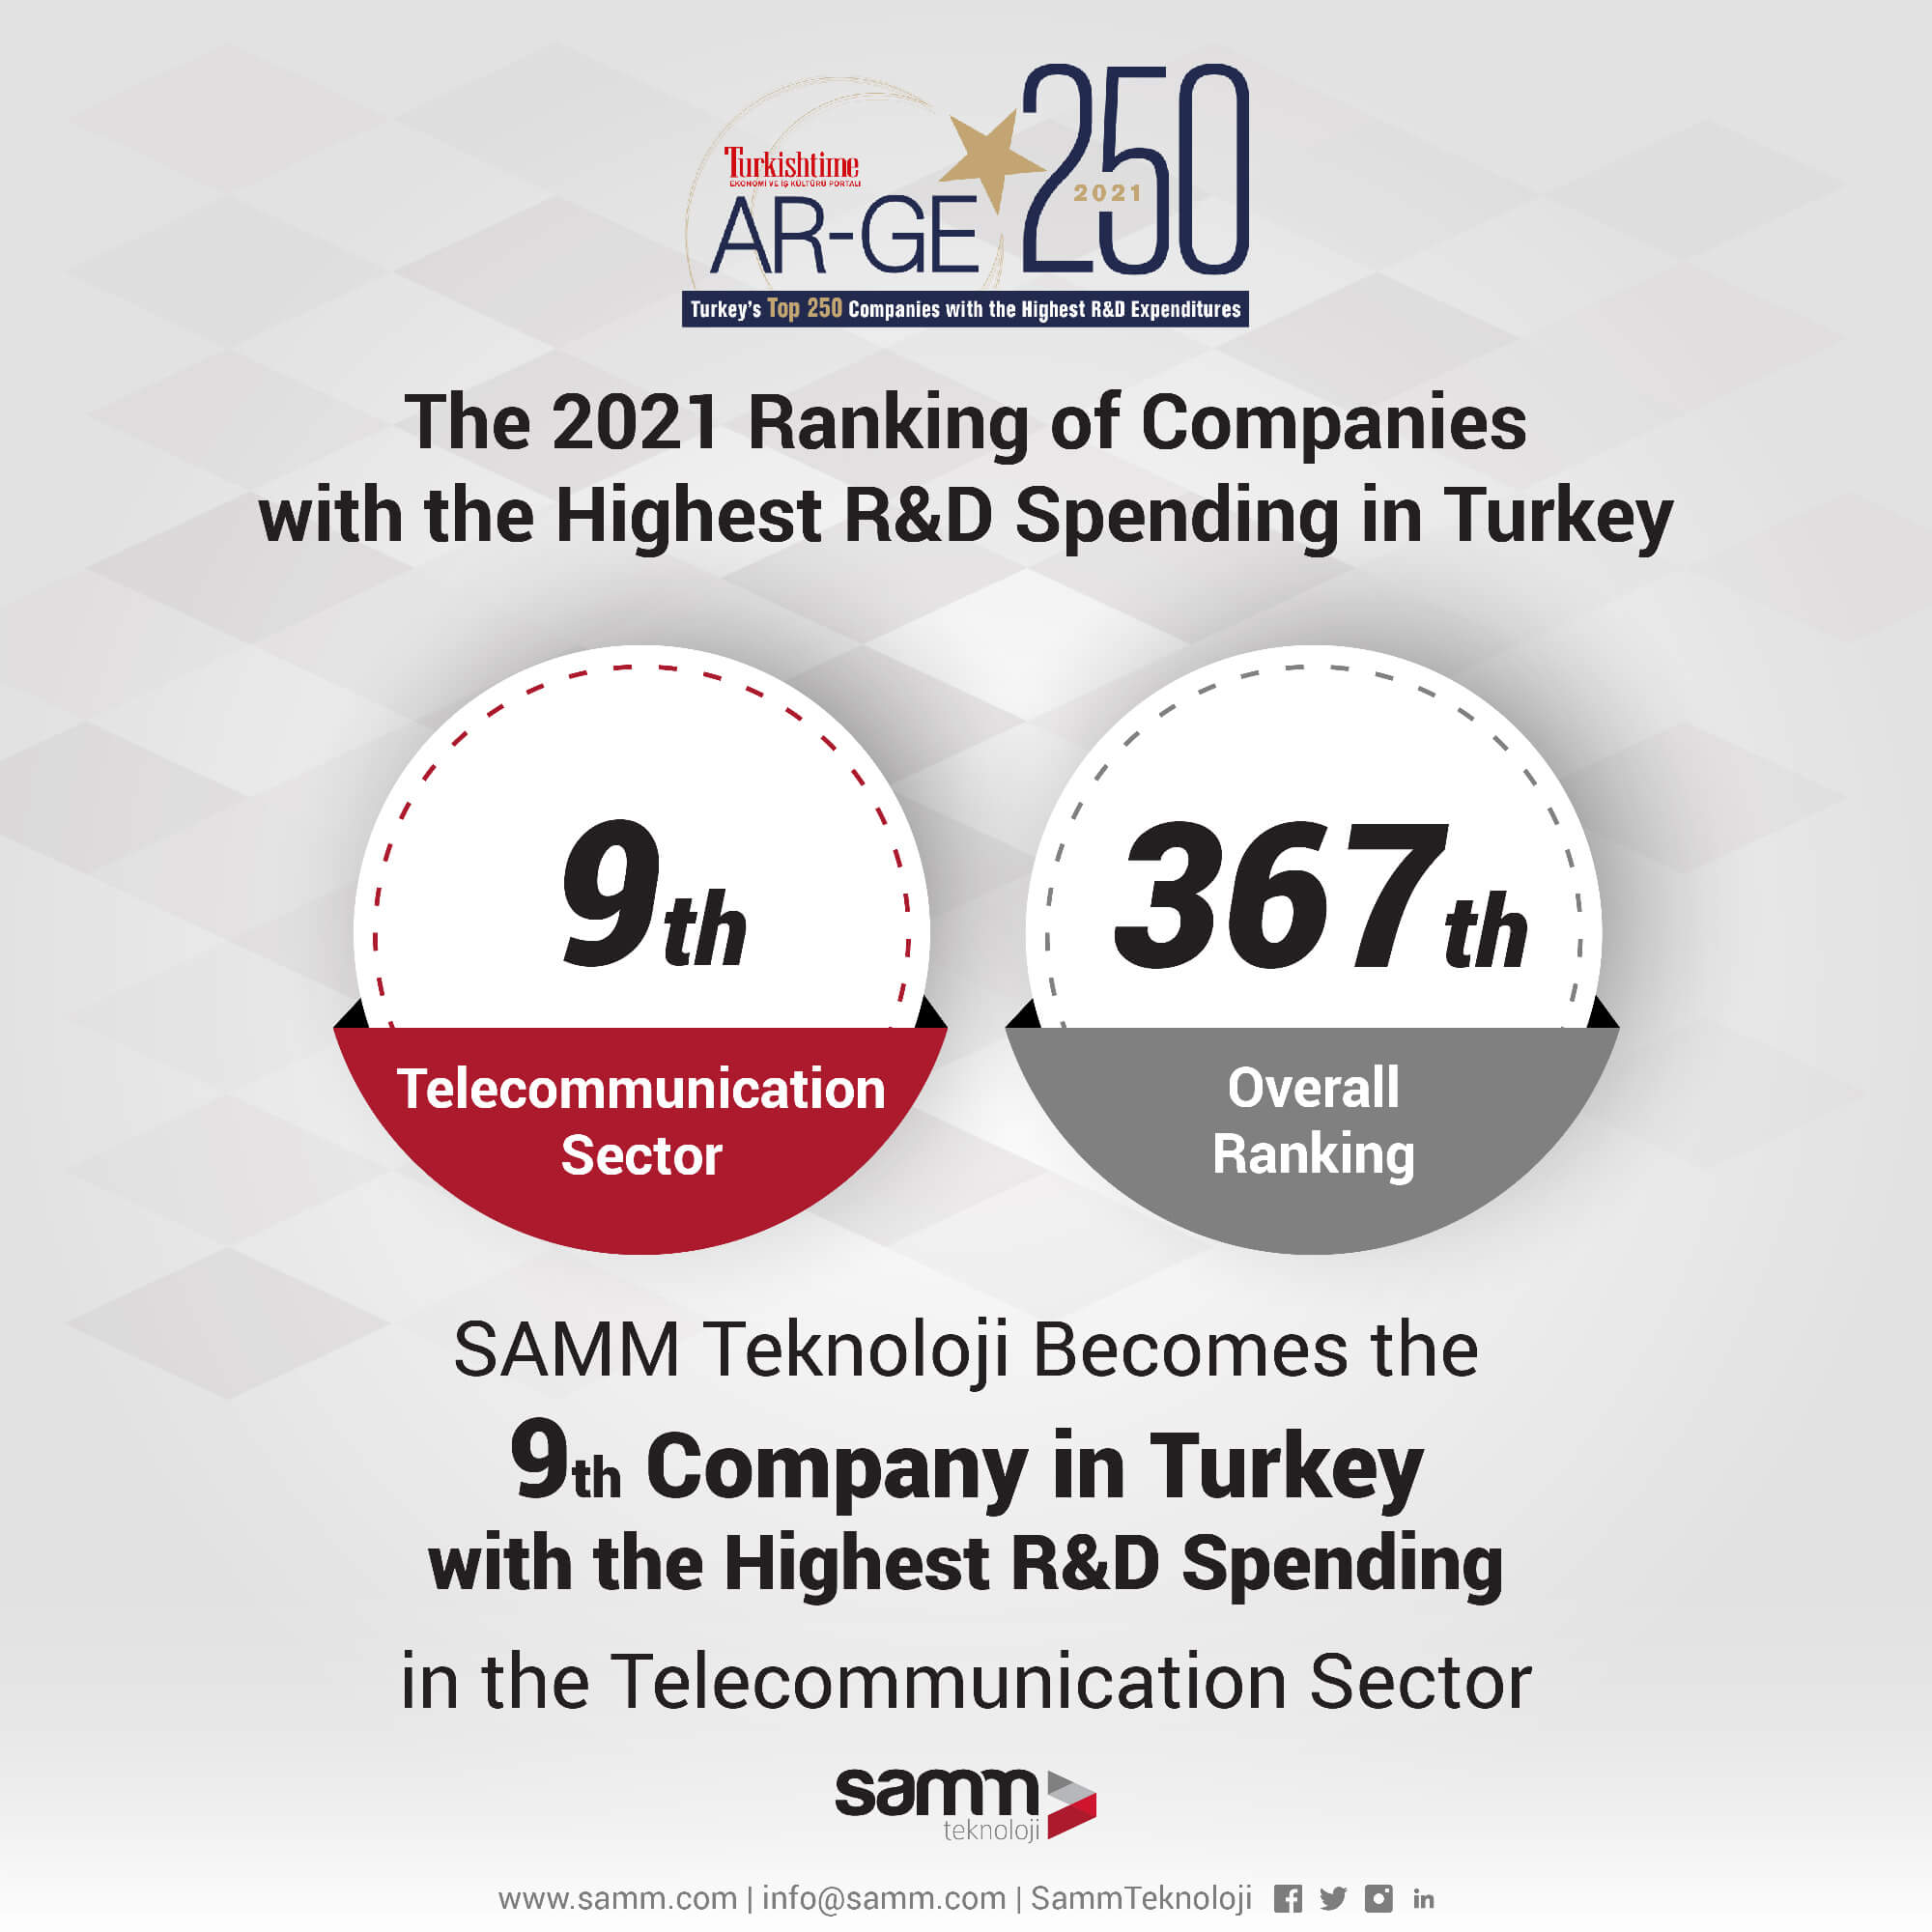 Samm Teknoloji gehört zu den Top 10 Unternehmen bei F&E-Investitionen im Telekommunikationssektor!